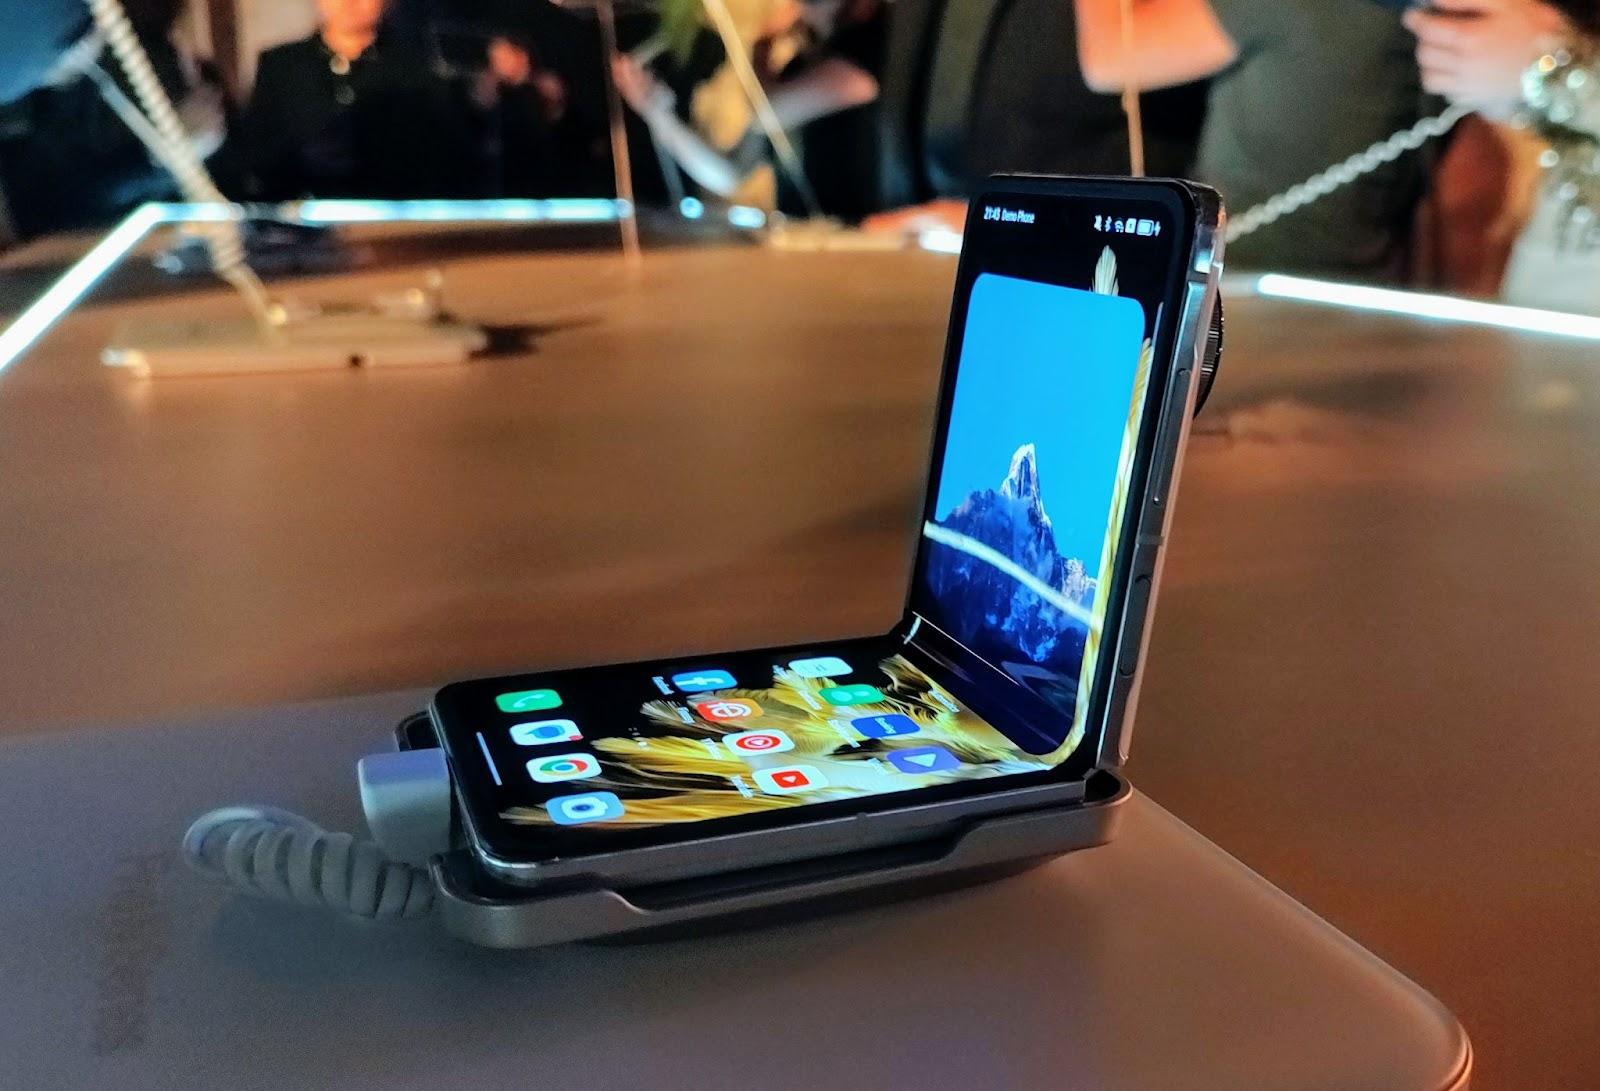 Oppo presenta dos nuevos smartphones plegables: Find N3 Flip y